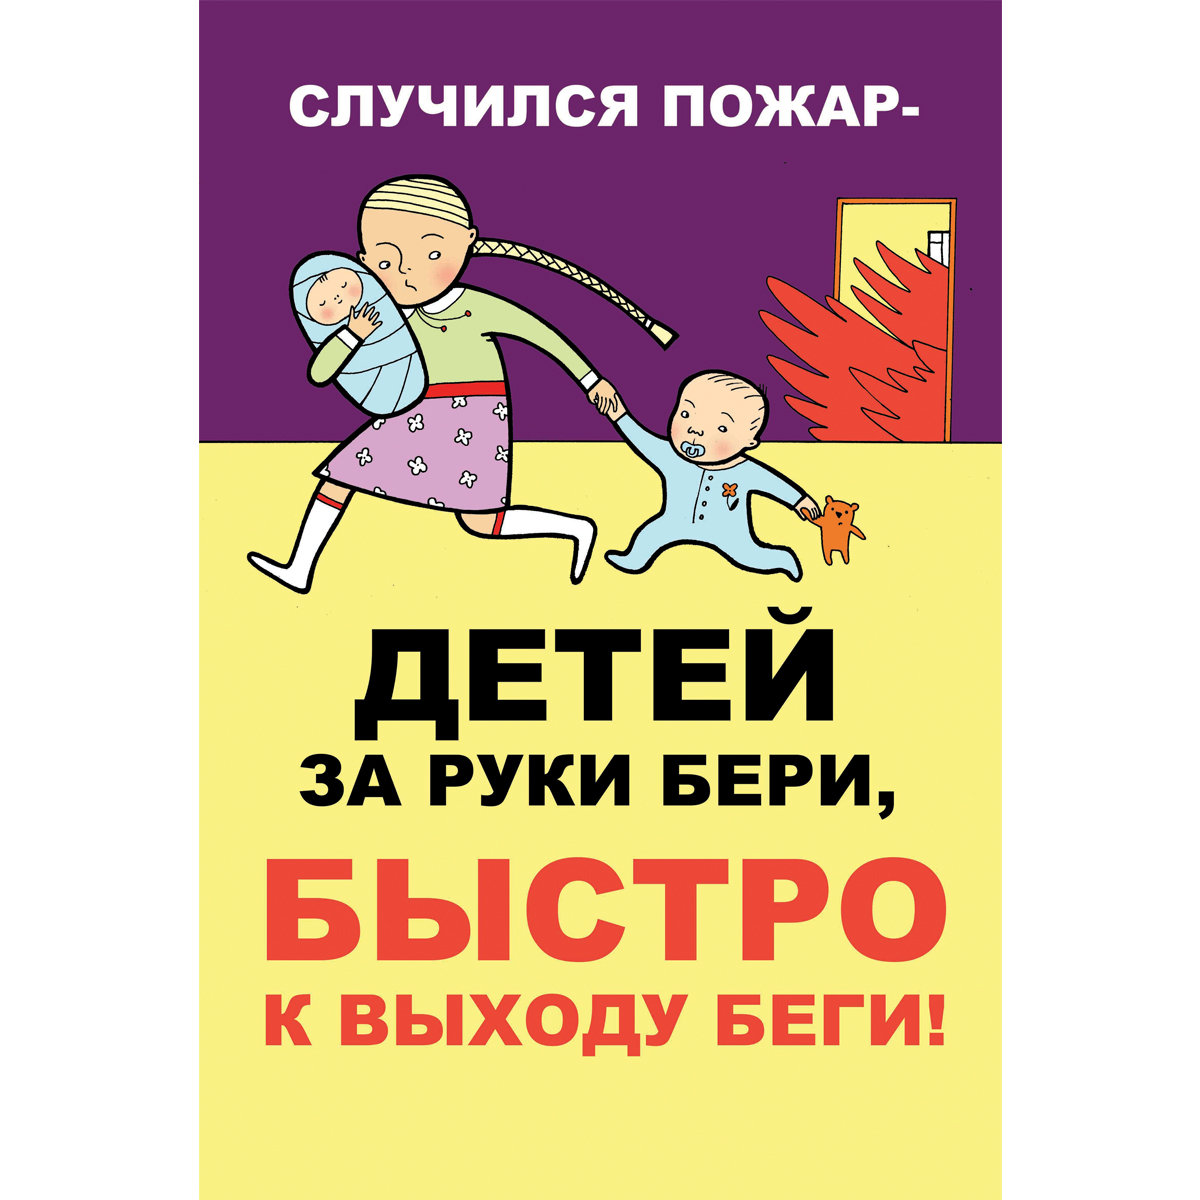 Плакат "Случился пожар - детей на руки бери быстро к выходу беги" (Бумага самоклеящаяся, 1 л.)